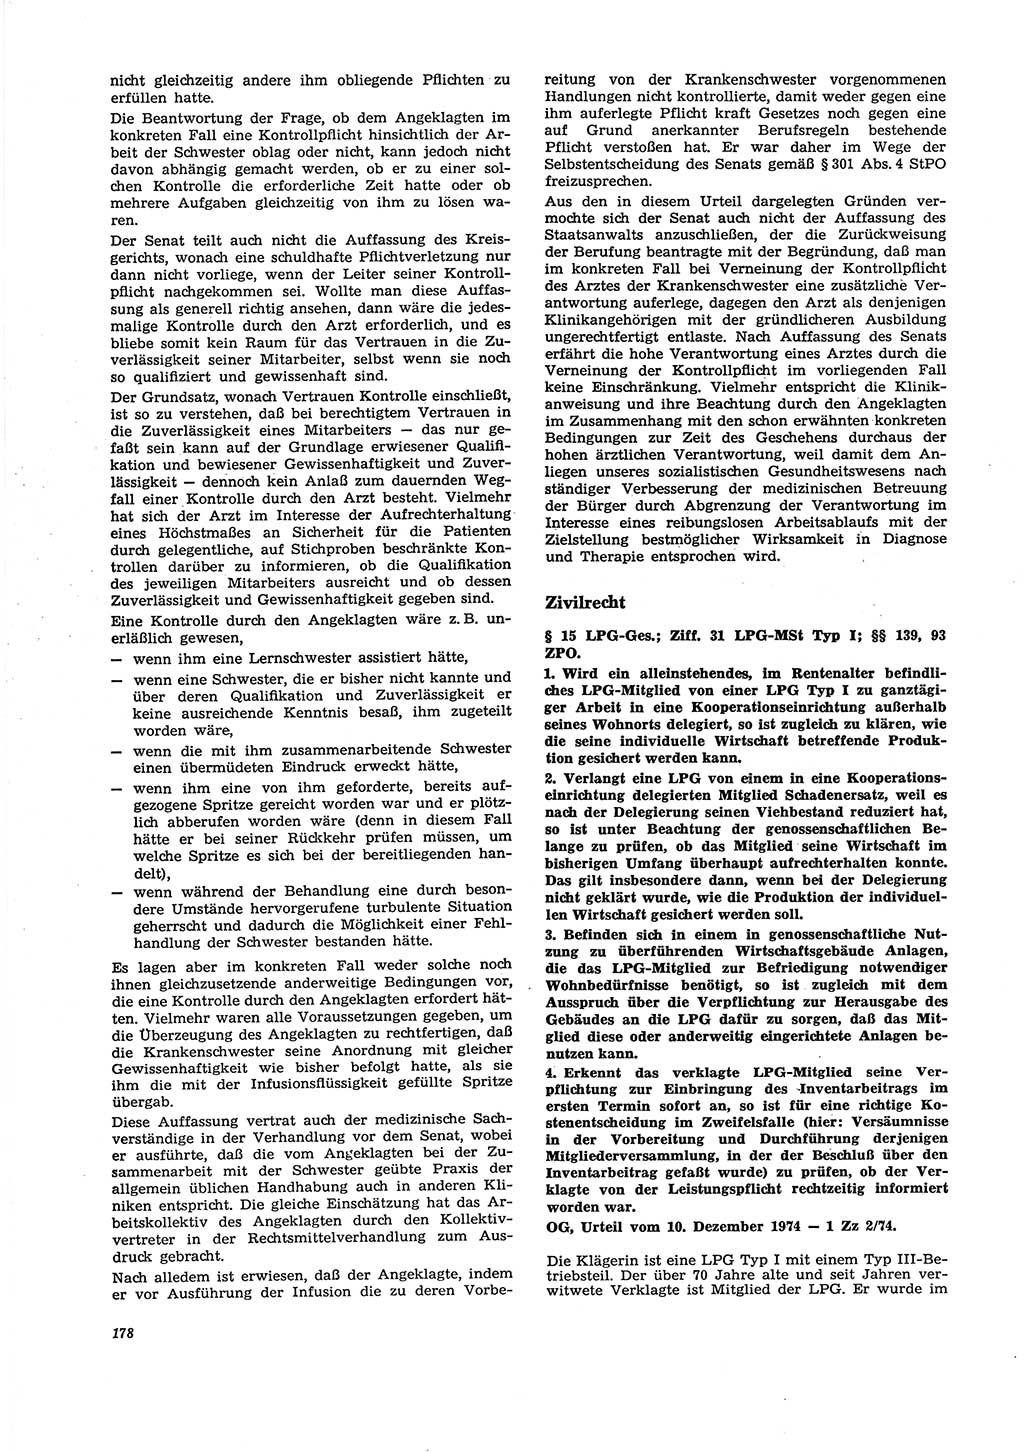 Neue Justiz (NJ), Zeitschrift für Recht und Rechtswissenschaft [Deutsche Demokratische Republik (DDR)], 29. Jahrgang 1975, Seite 178 (NJ DDR 1975, S. 178)